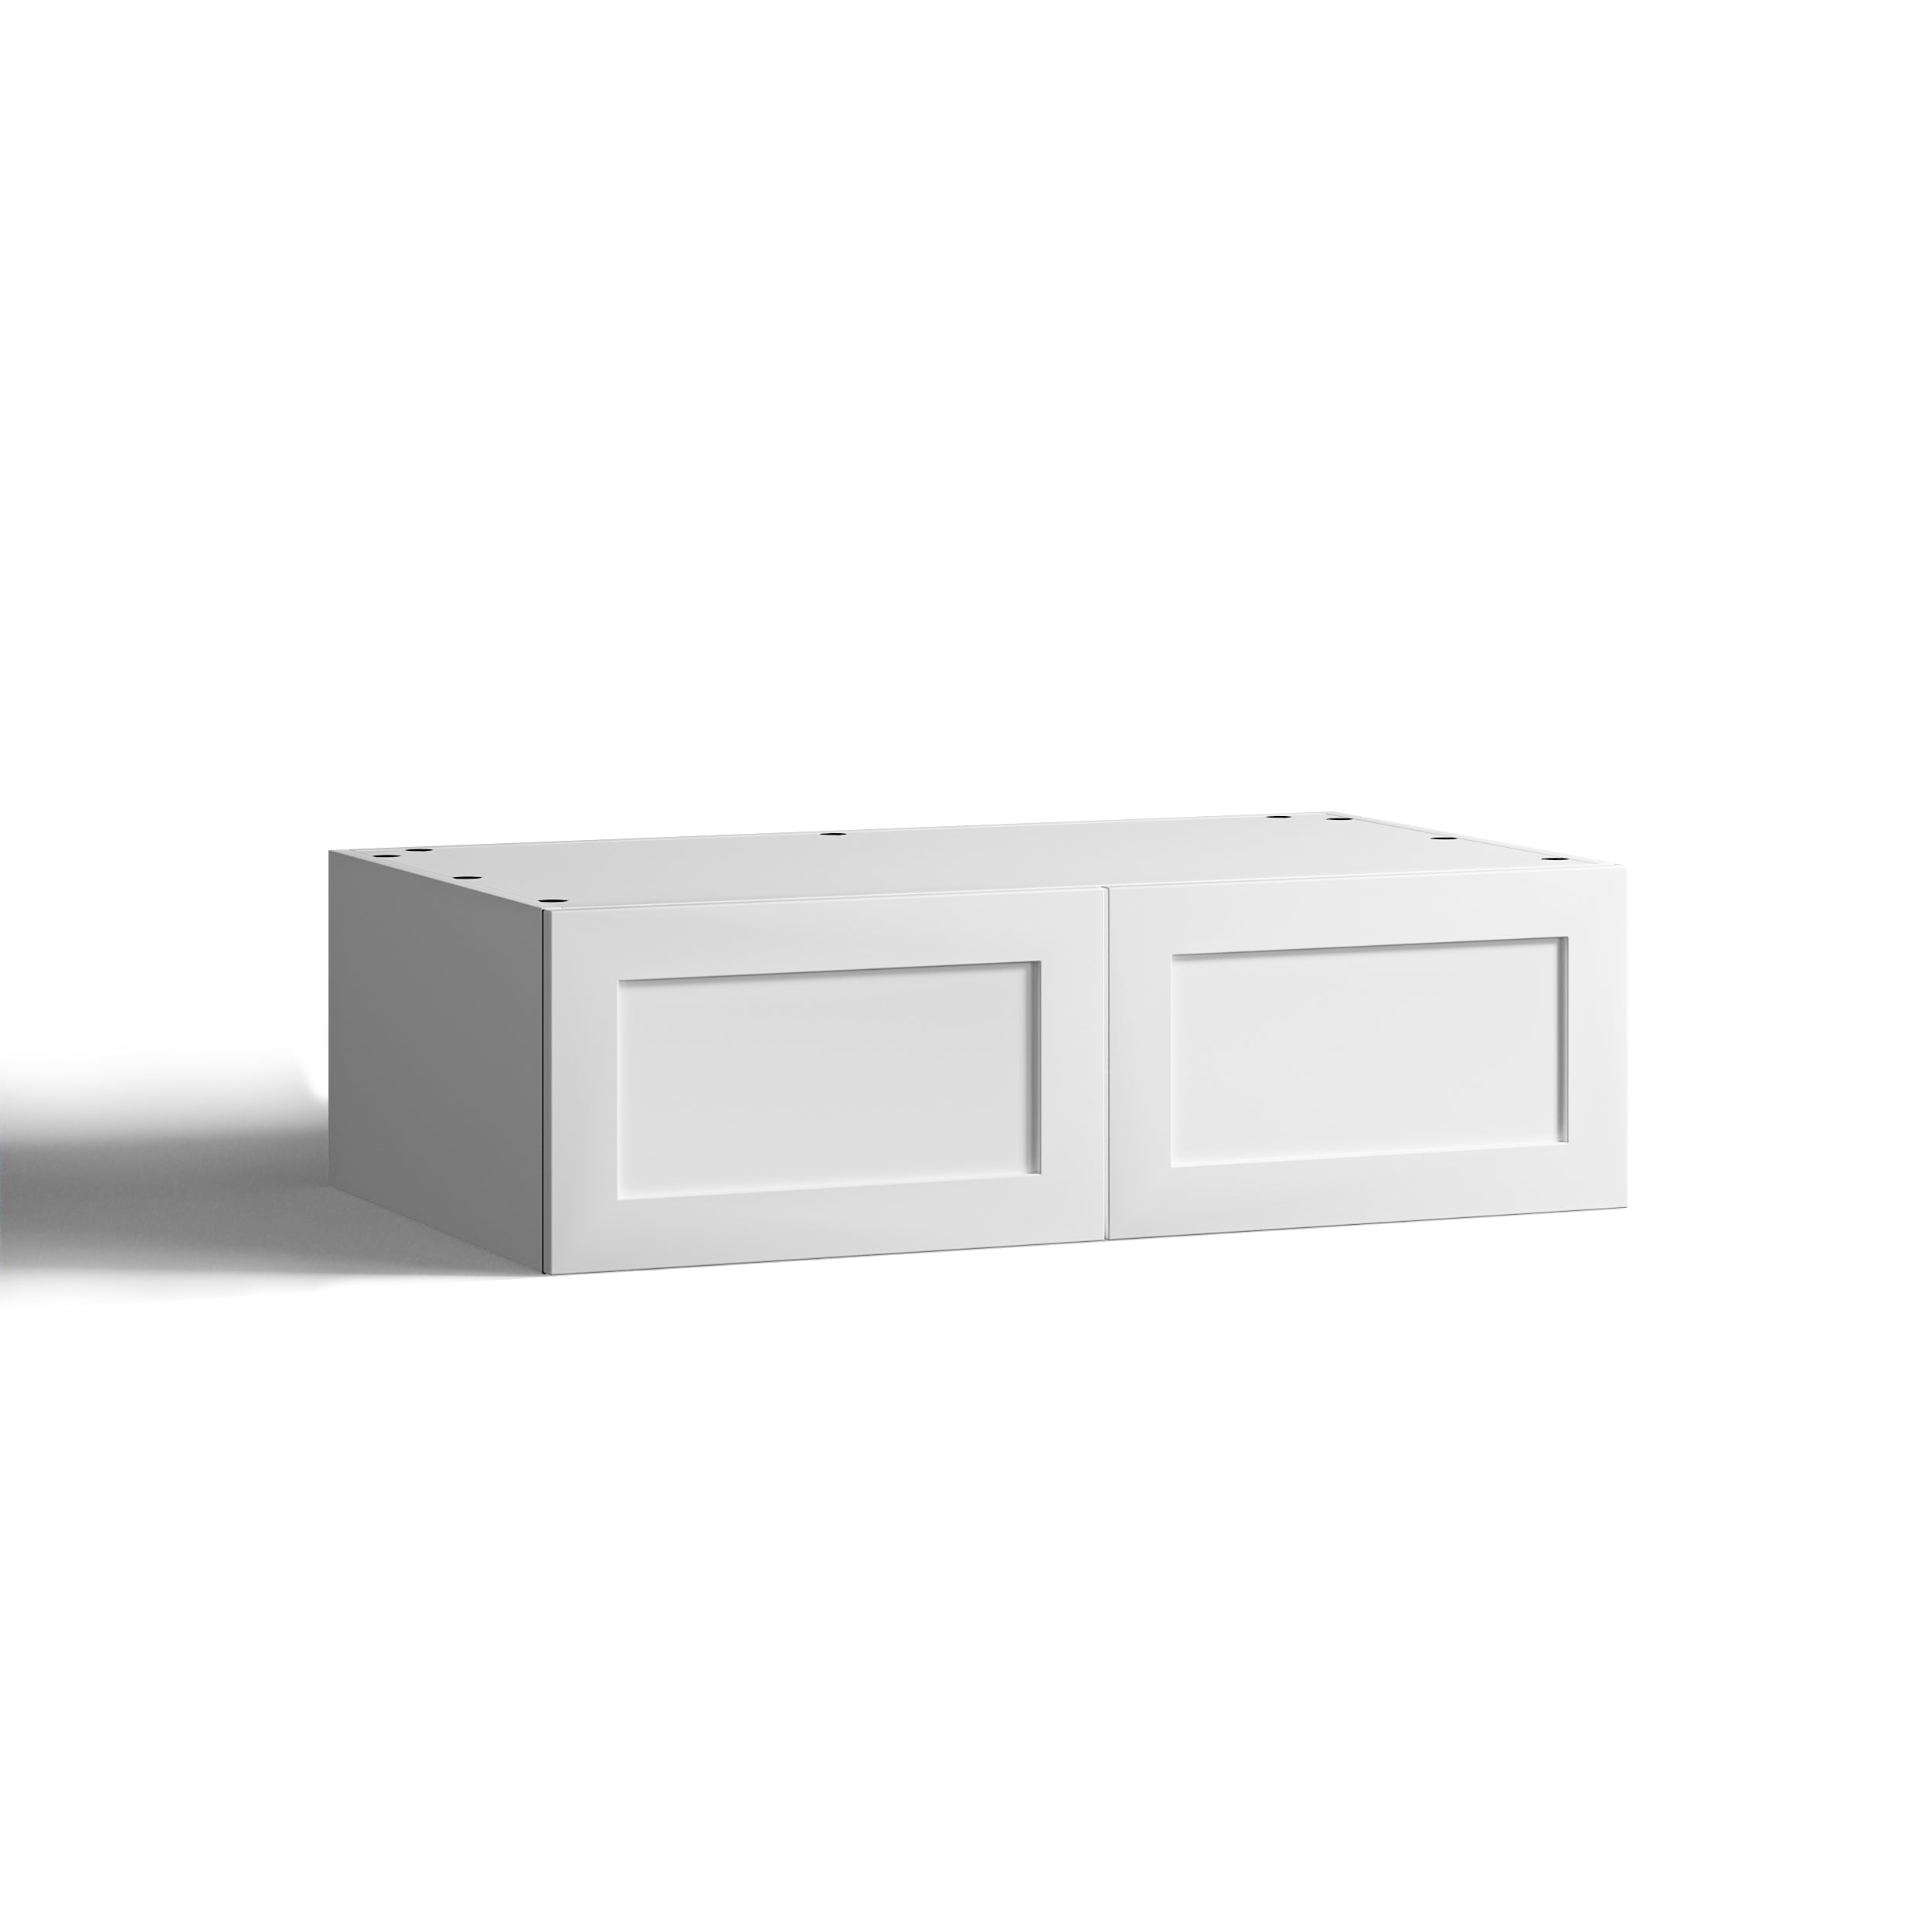 100x30 - Cabinet (58cm D) w 2 Doors - Timber Veneer - Shaker - PAX